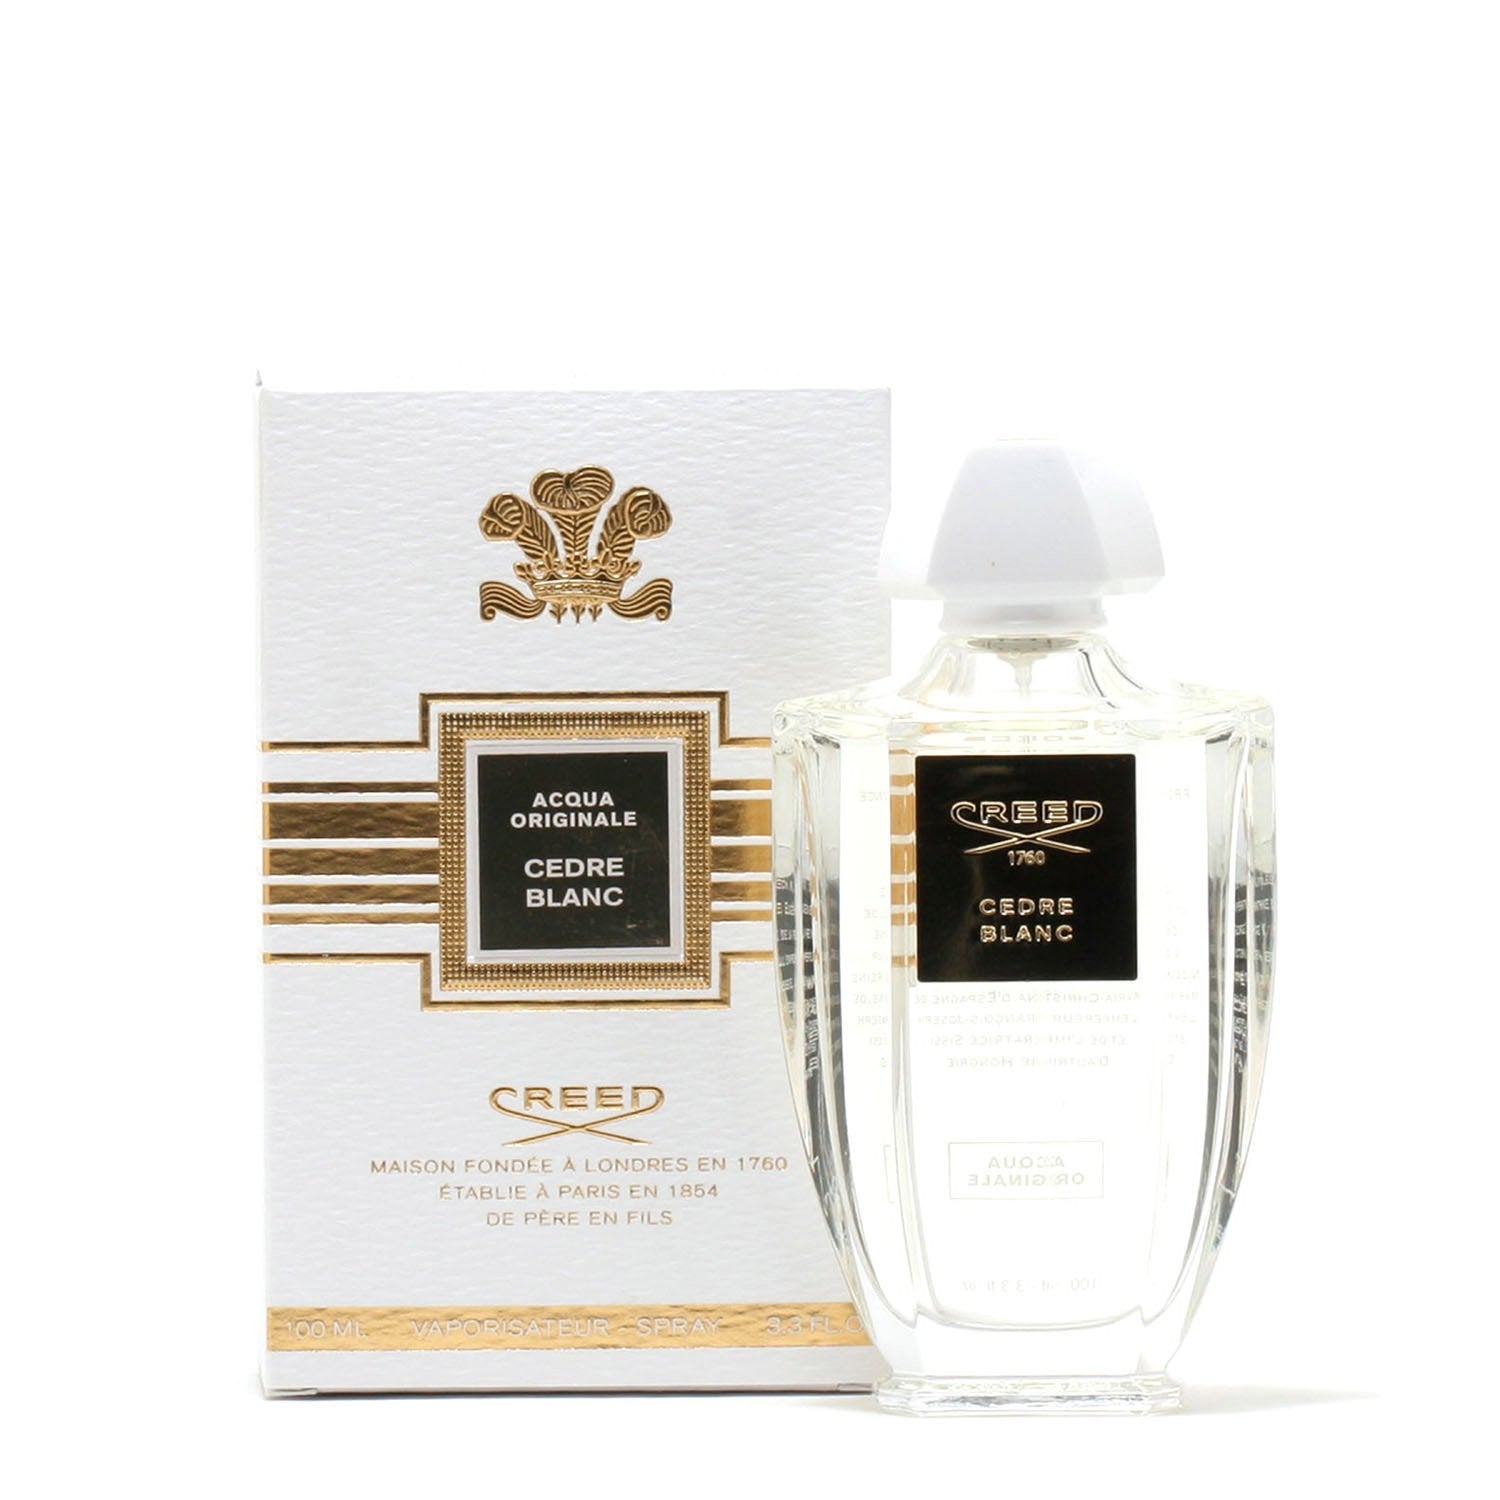 Perfume - CREED ACQUA ORIGINALE CEDRE BLANC UNISEX - EAU DE PARFUM SPRAY, 3.4 OZ